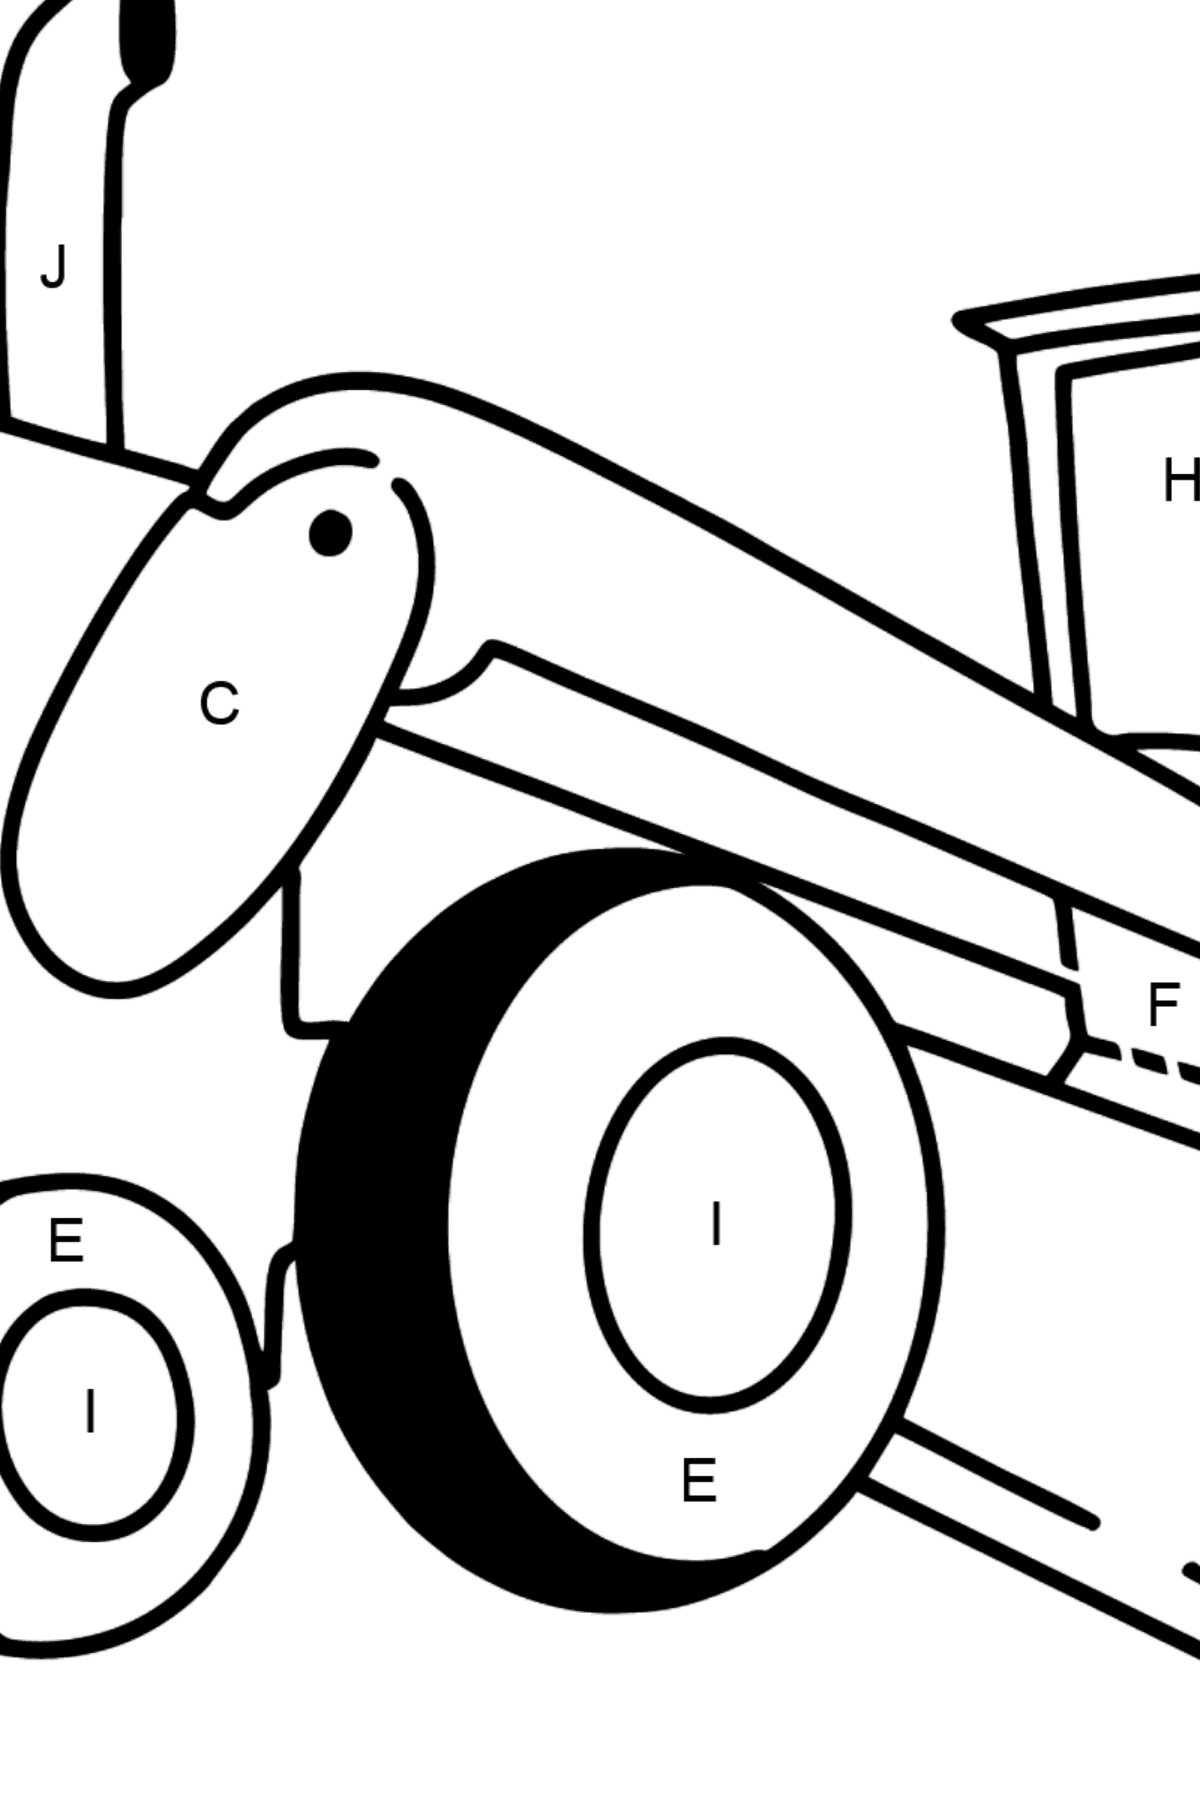 Dibujo de Tractor nivelador para colorear - Colorear por Letras para Niños